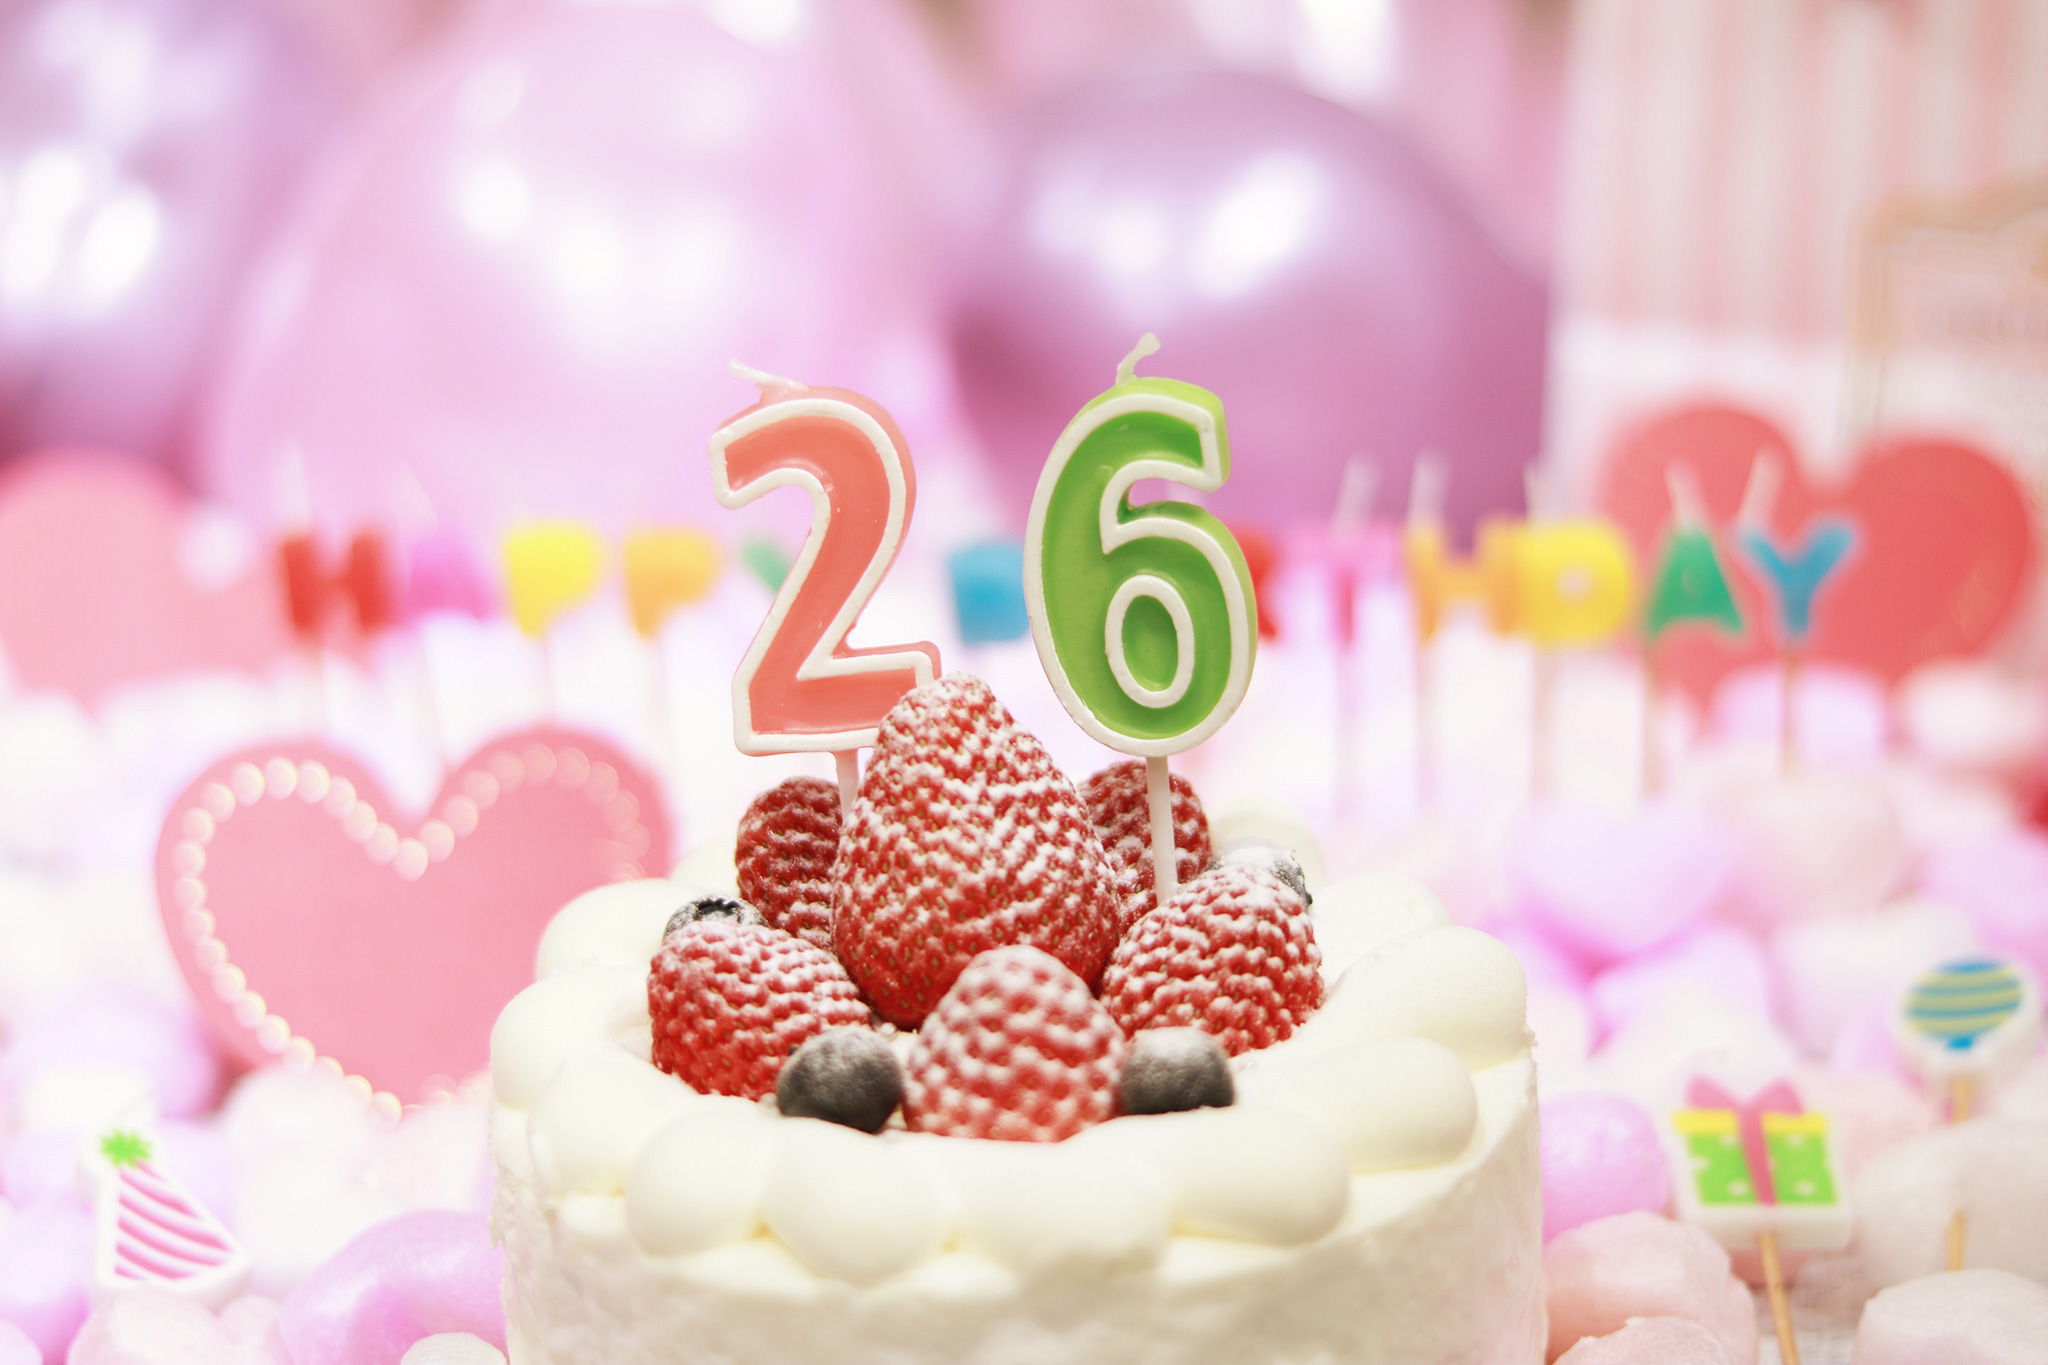 オシャレな誕生日画像 可愛いケーキとキャンドルでお祝い 26歳編 のフリー画像 おしゃれなフリー写真素材 Girly Drop